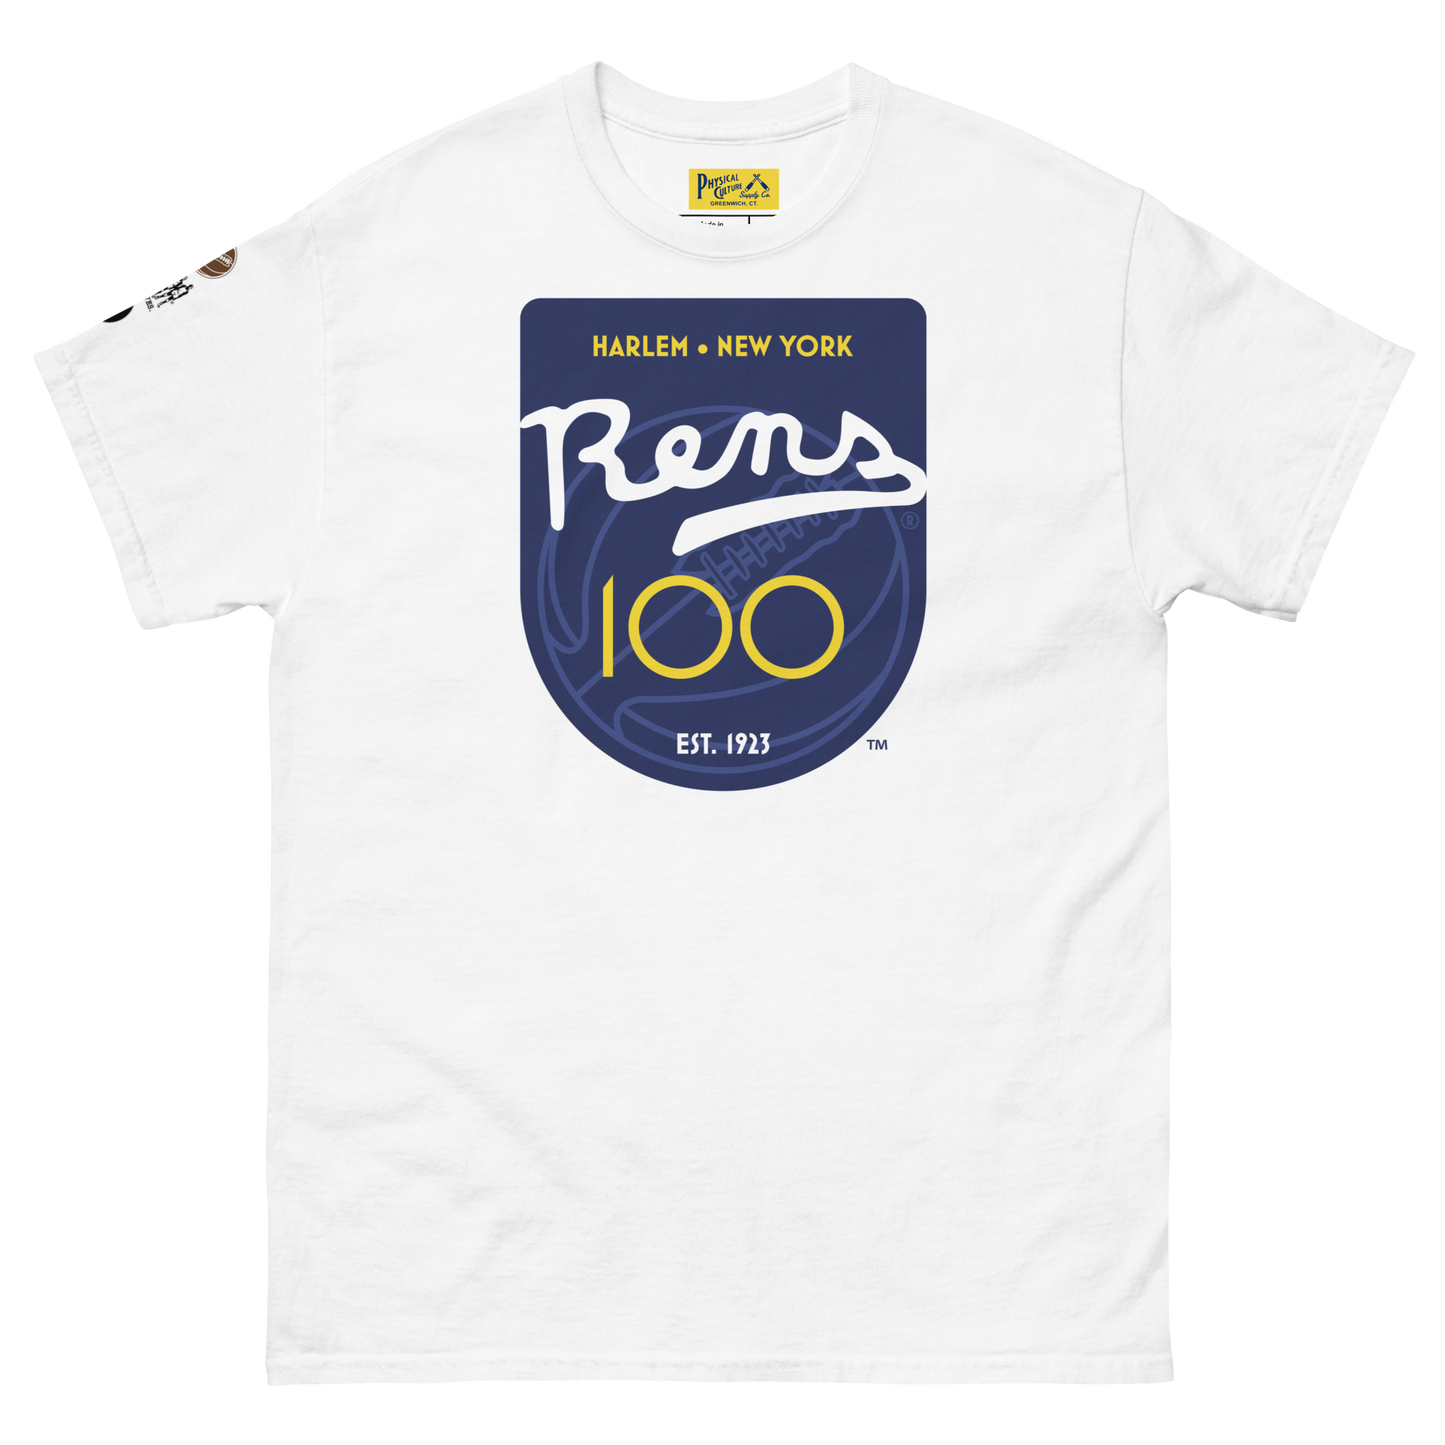 RENS100 Short Sleeve Tee